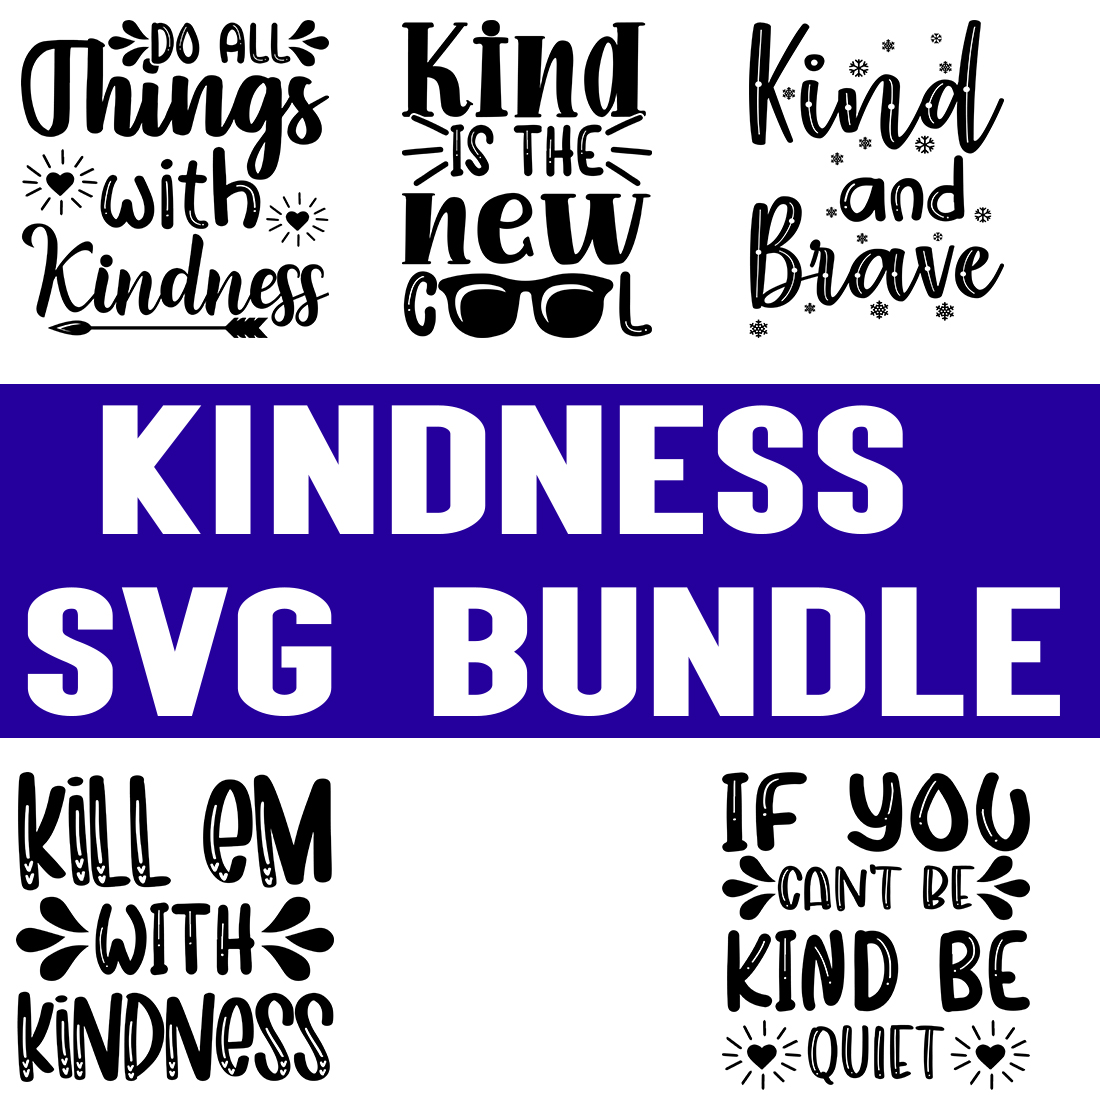 Kindness svg Bundle preview image.